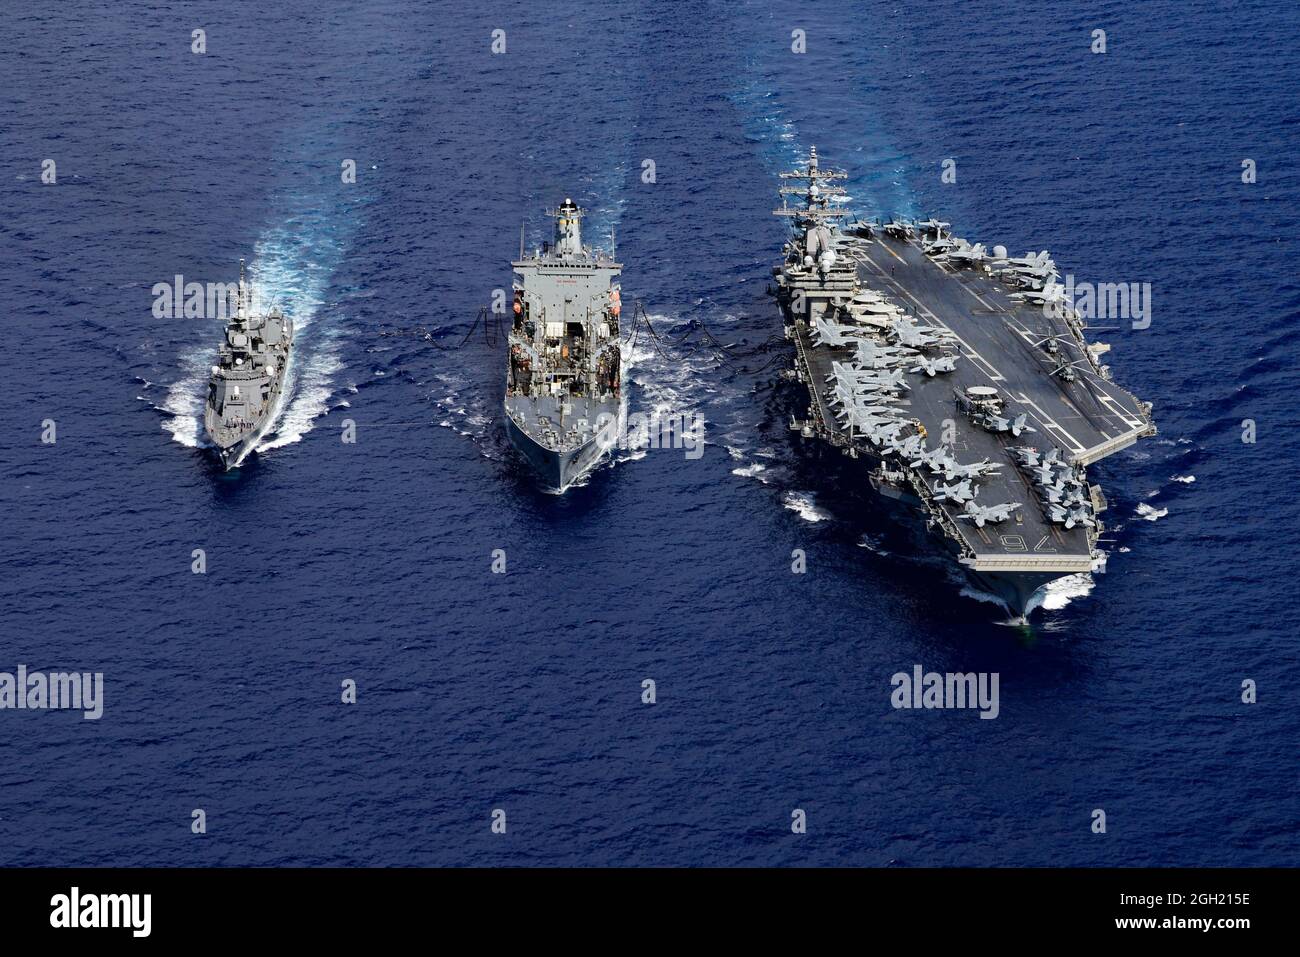 PHILIPPINISCHES MEER (Aug 16, 2020) der japanische Maritime Self-Defense Force Murashame-Klasse Zerstörer Ikazuchi (JS 107), links, die Flotte Nachschub Öler U Stockfoto